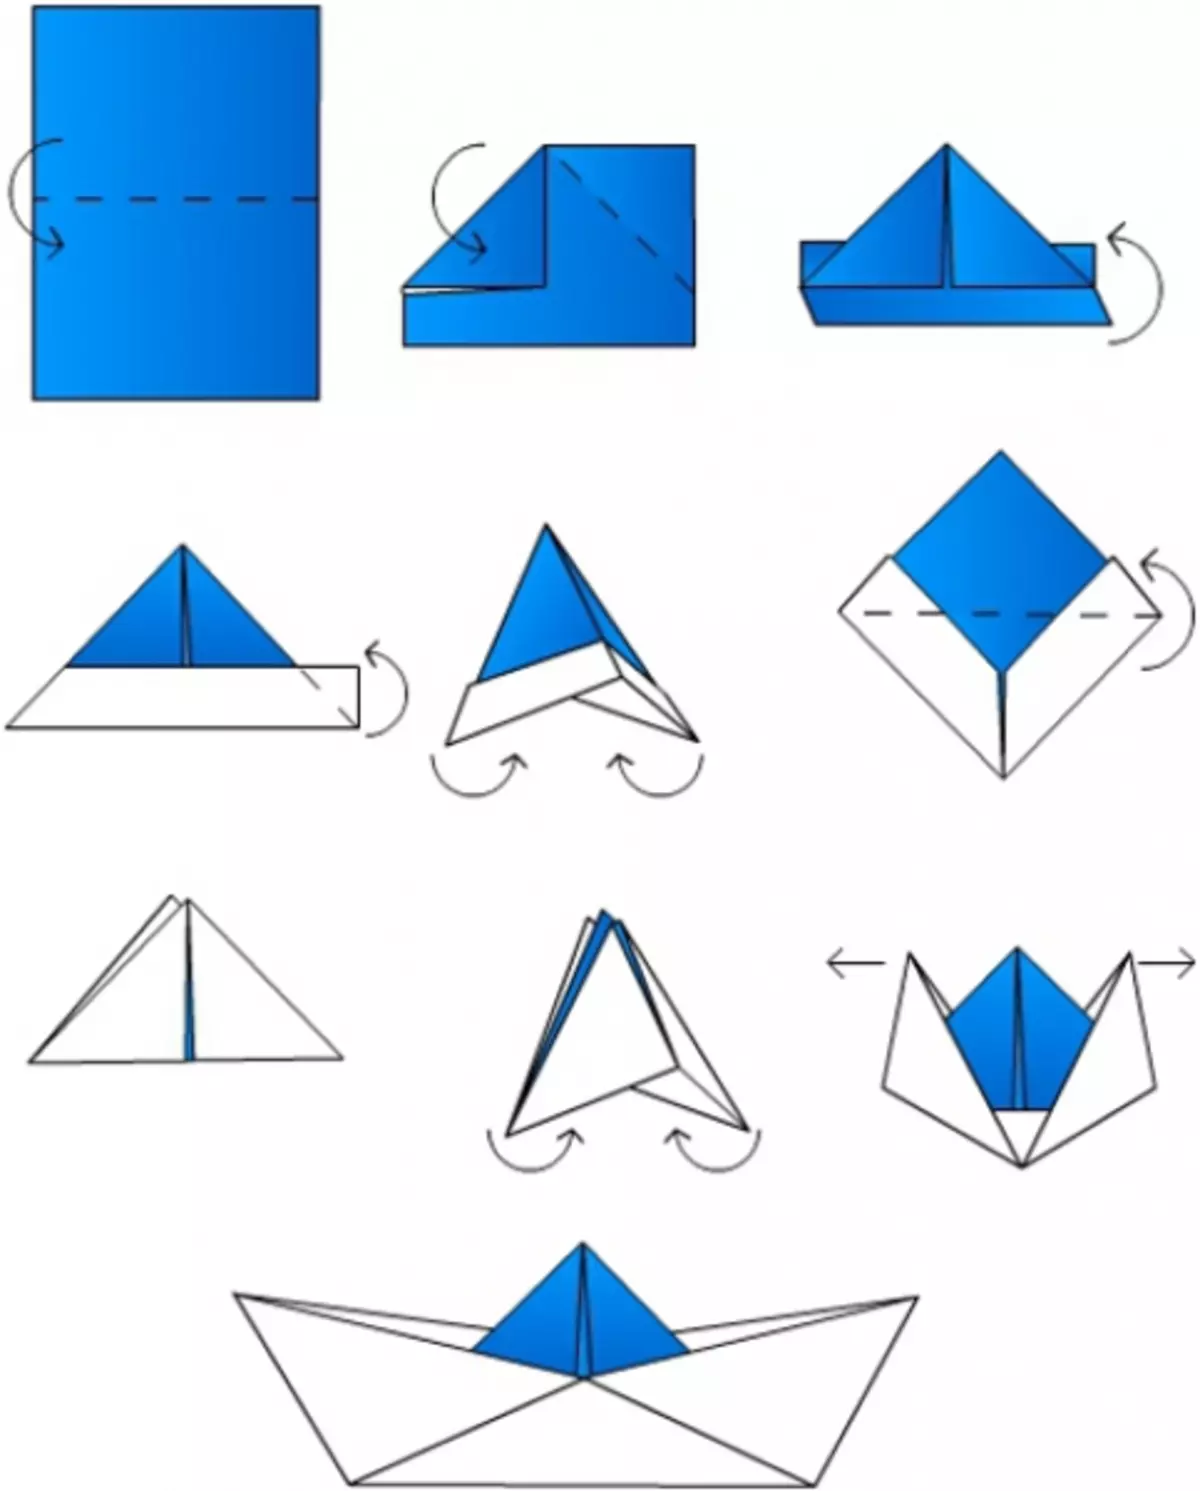 Как делаются кораблики. Схема как сделать кораблик из бумаги. Кораблик оригами из бумаги для детей схема простая. Бумажный кораблик схема складывания. Как делать кораблик из бумаги а4.